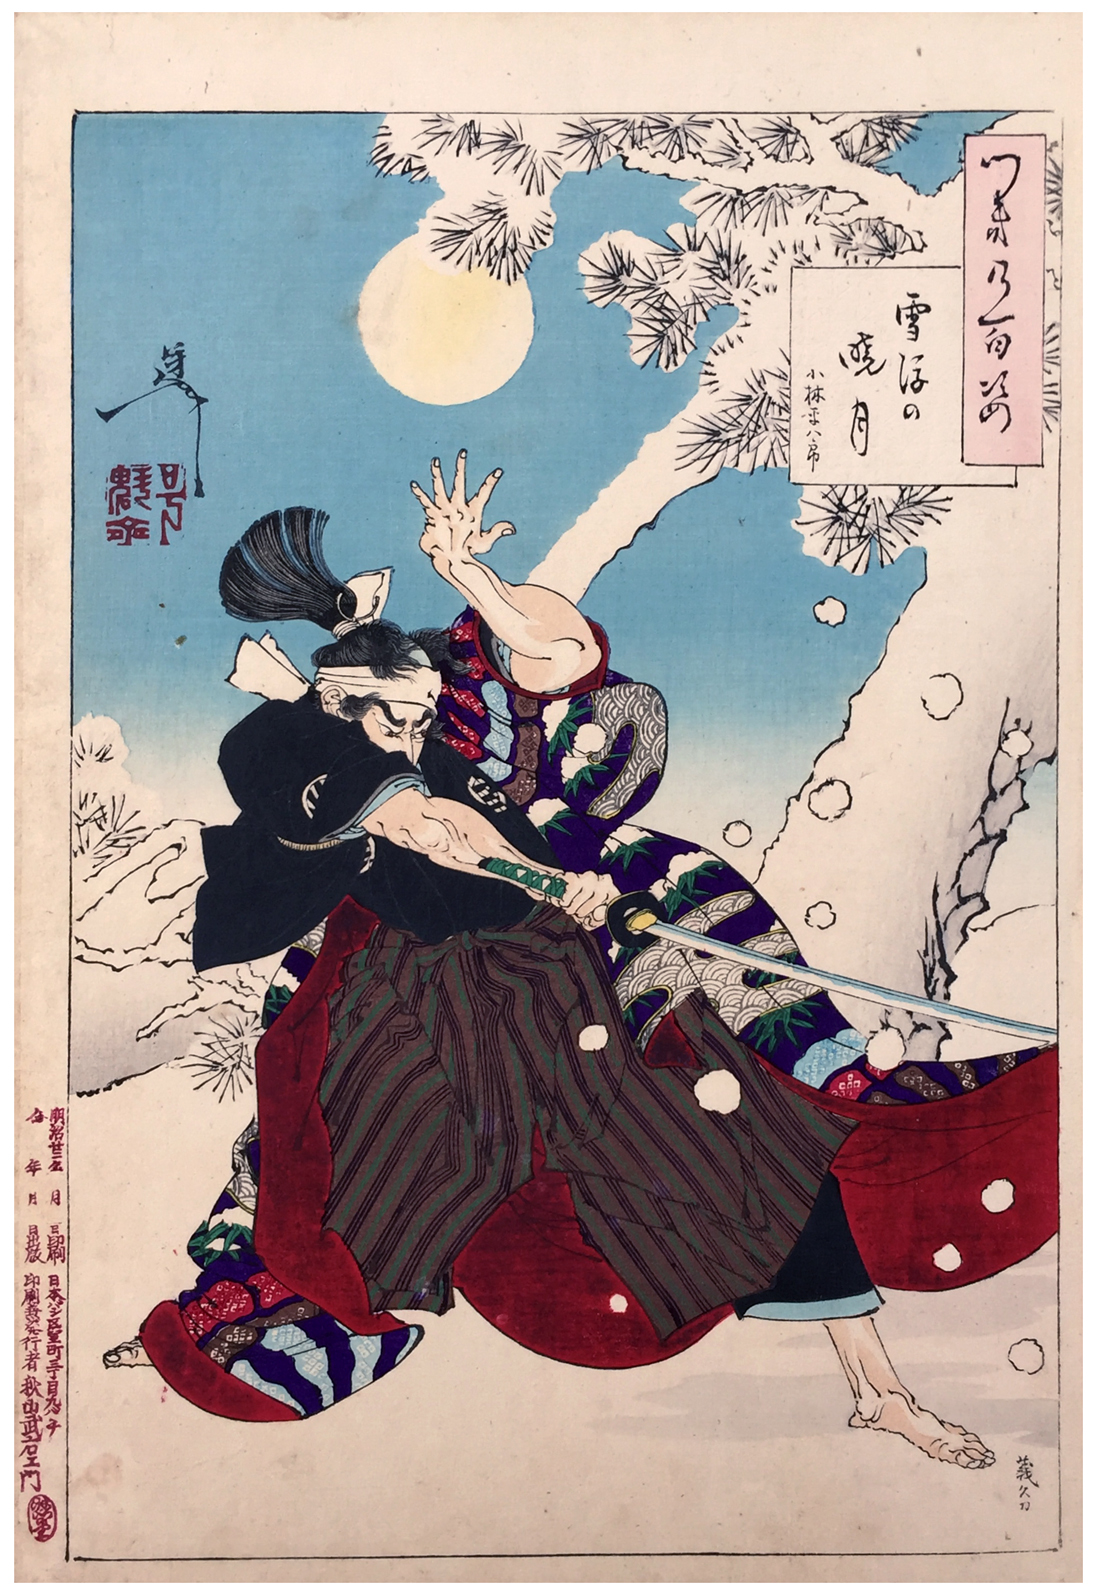 새벽 달과 흩날리는 눈발 by Tsukioka Yoshitoshi - 1889 